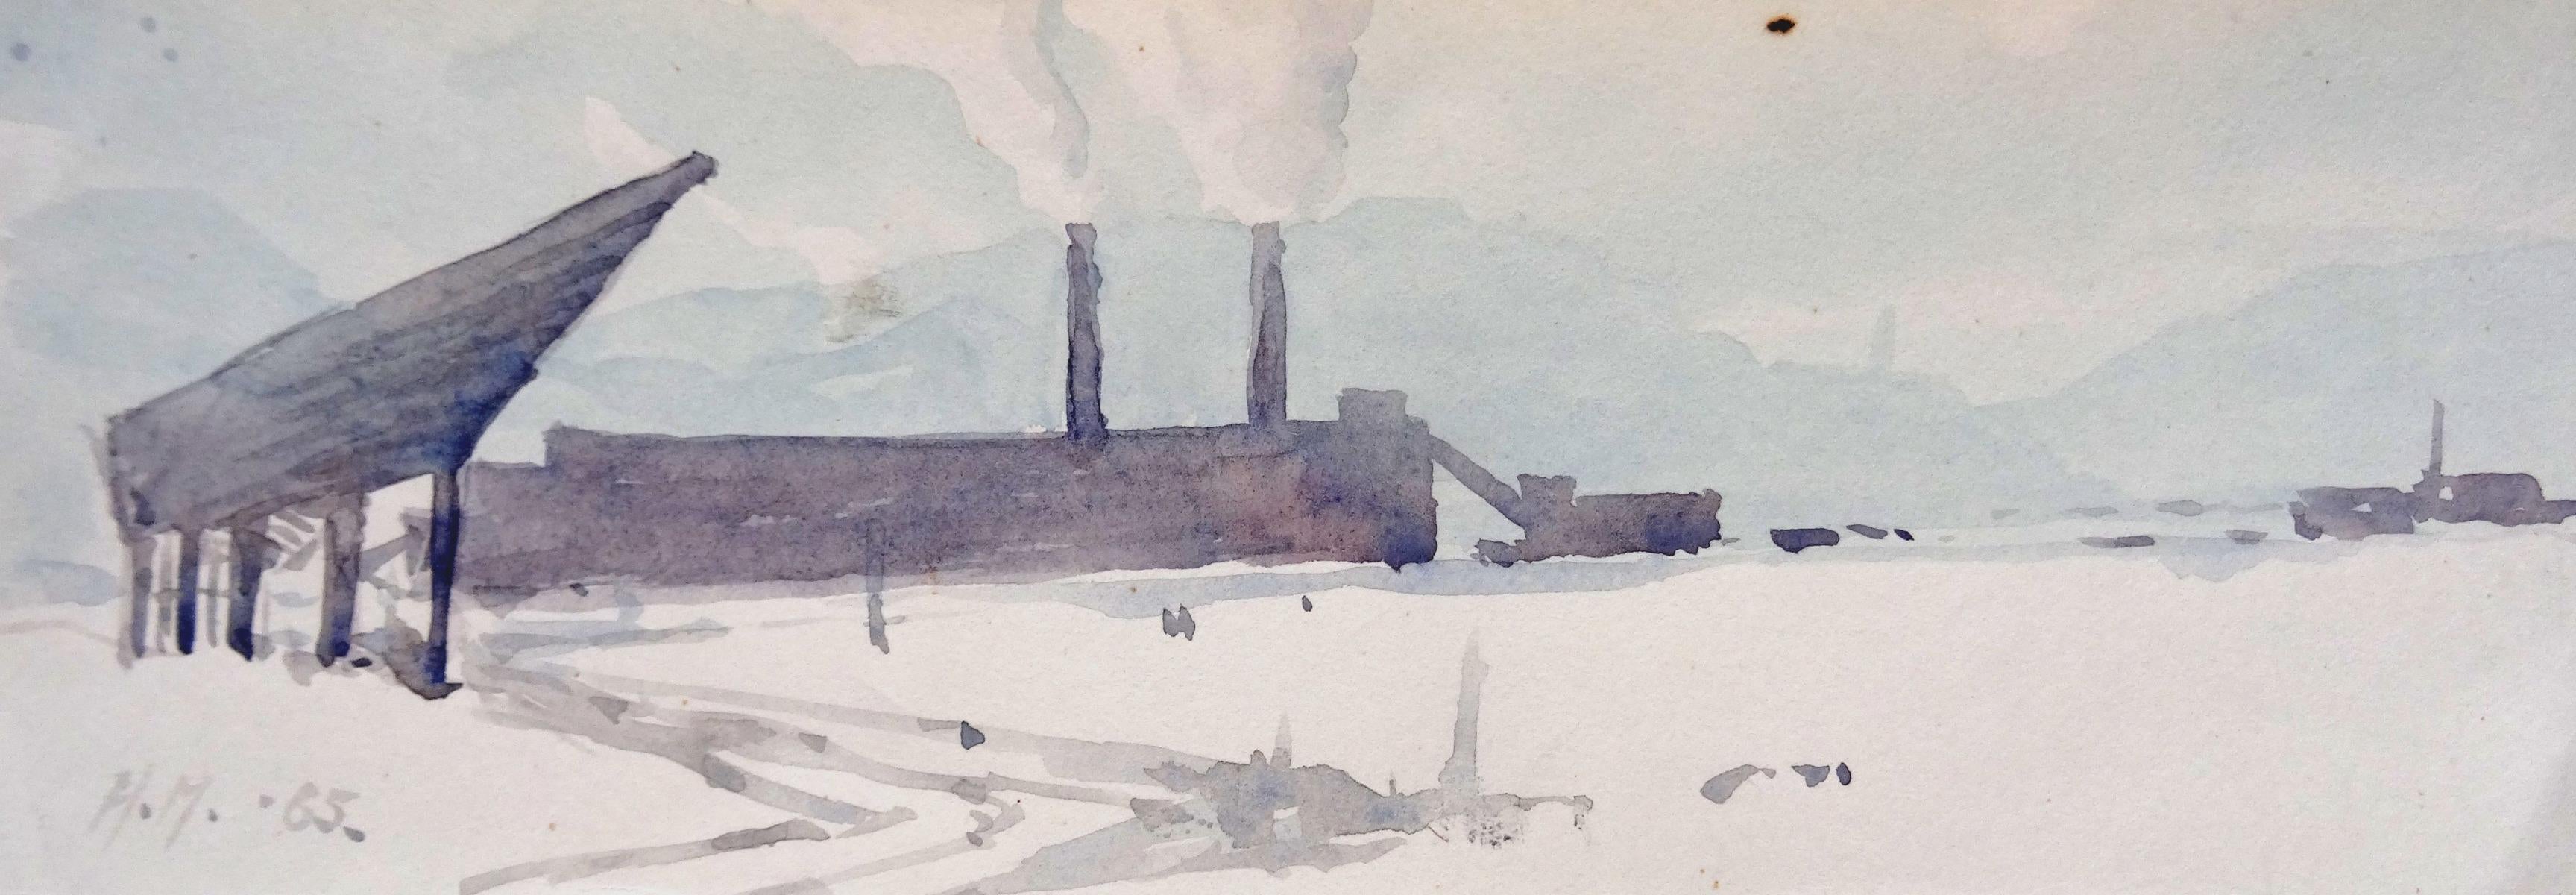 Herberts Mangolds Landscape Art - Cargo ship  1965. paper/watercolor., 8x22.3 cm